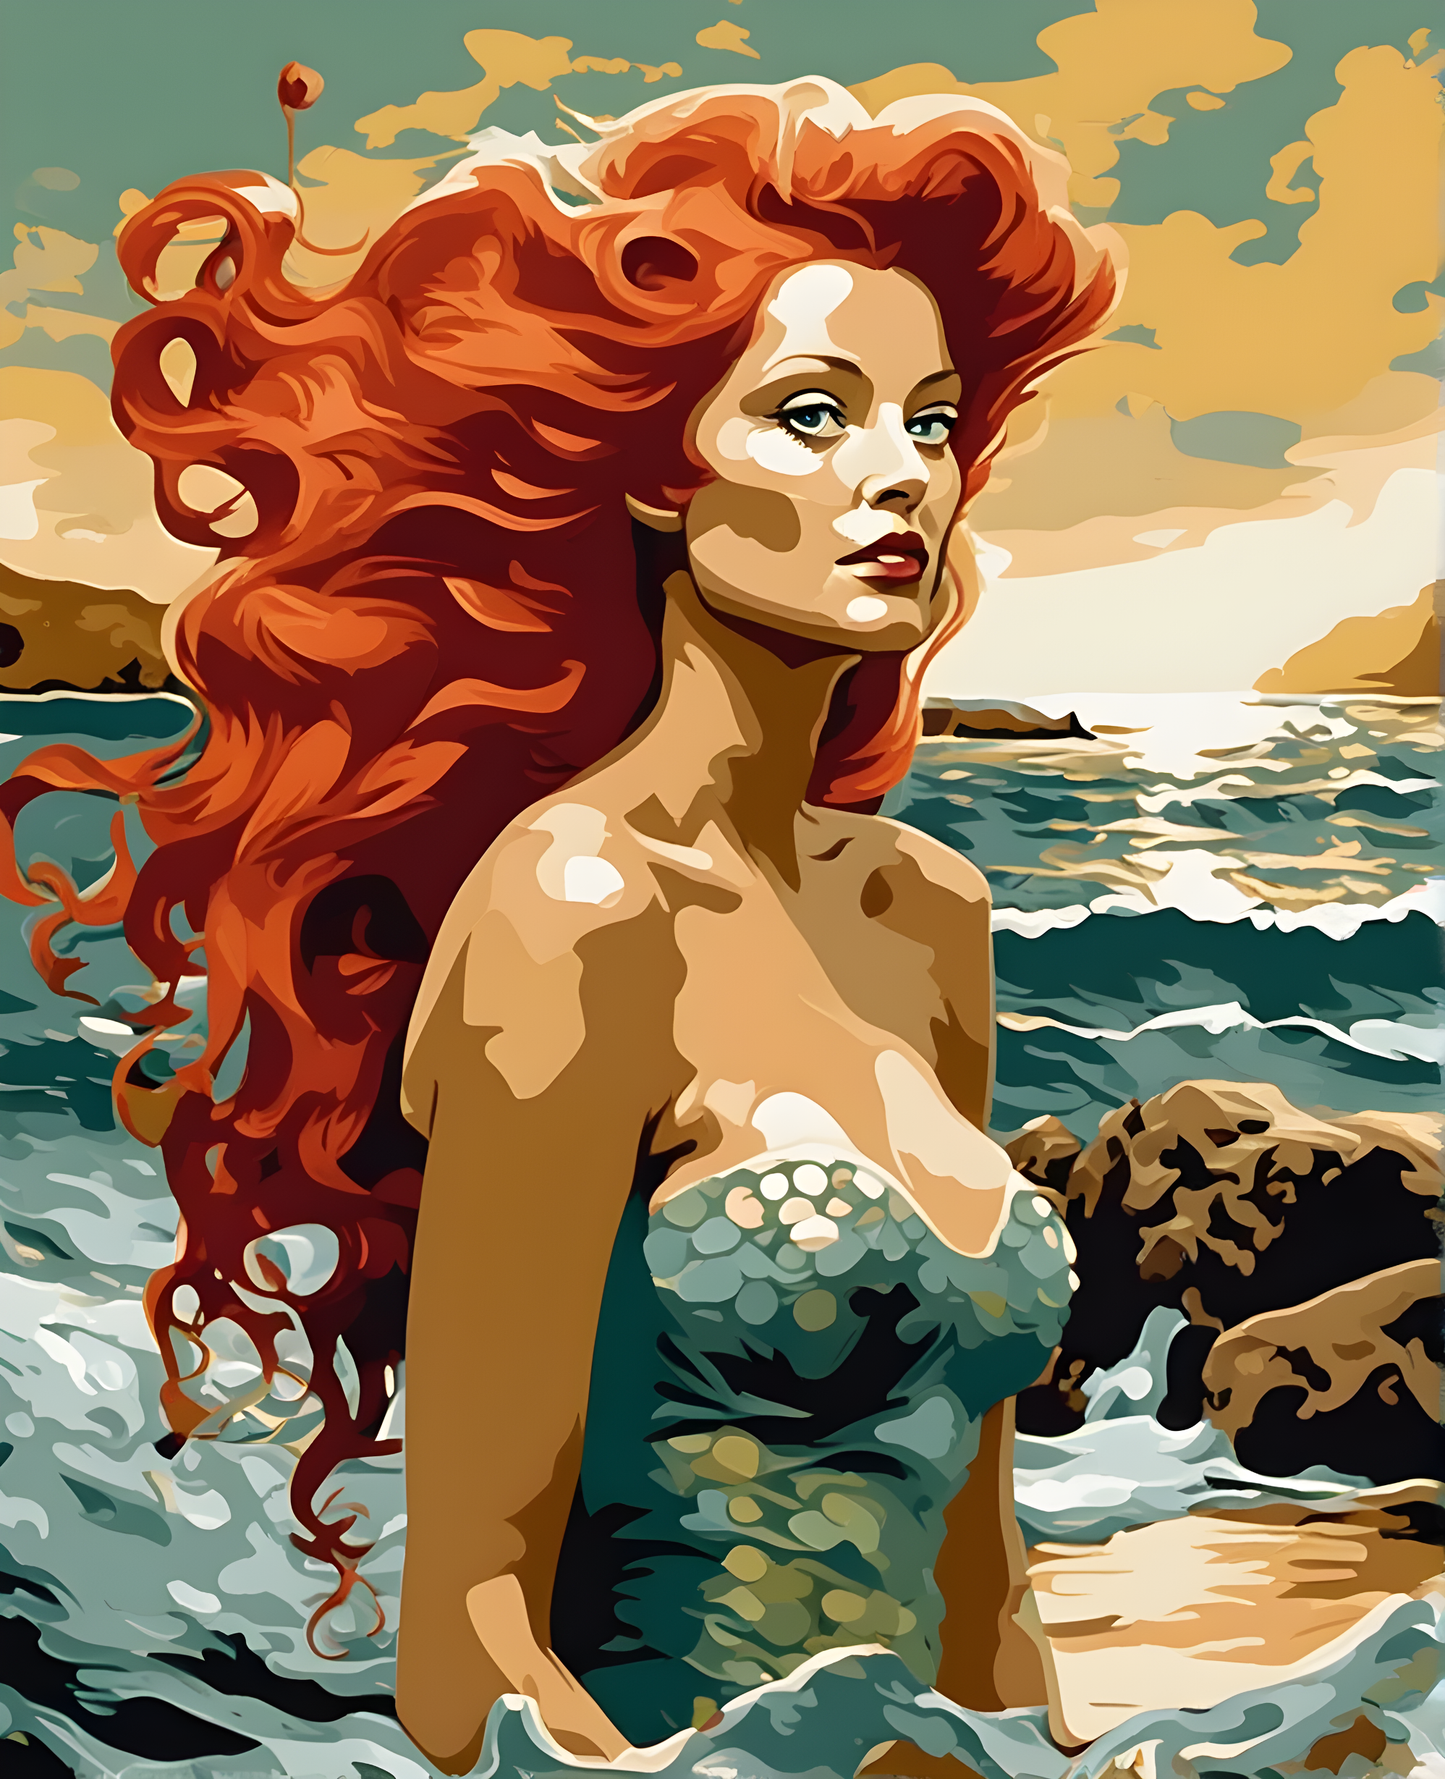 Redhead Mermaid (2) - Van-Go Paint-By-Number Kit